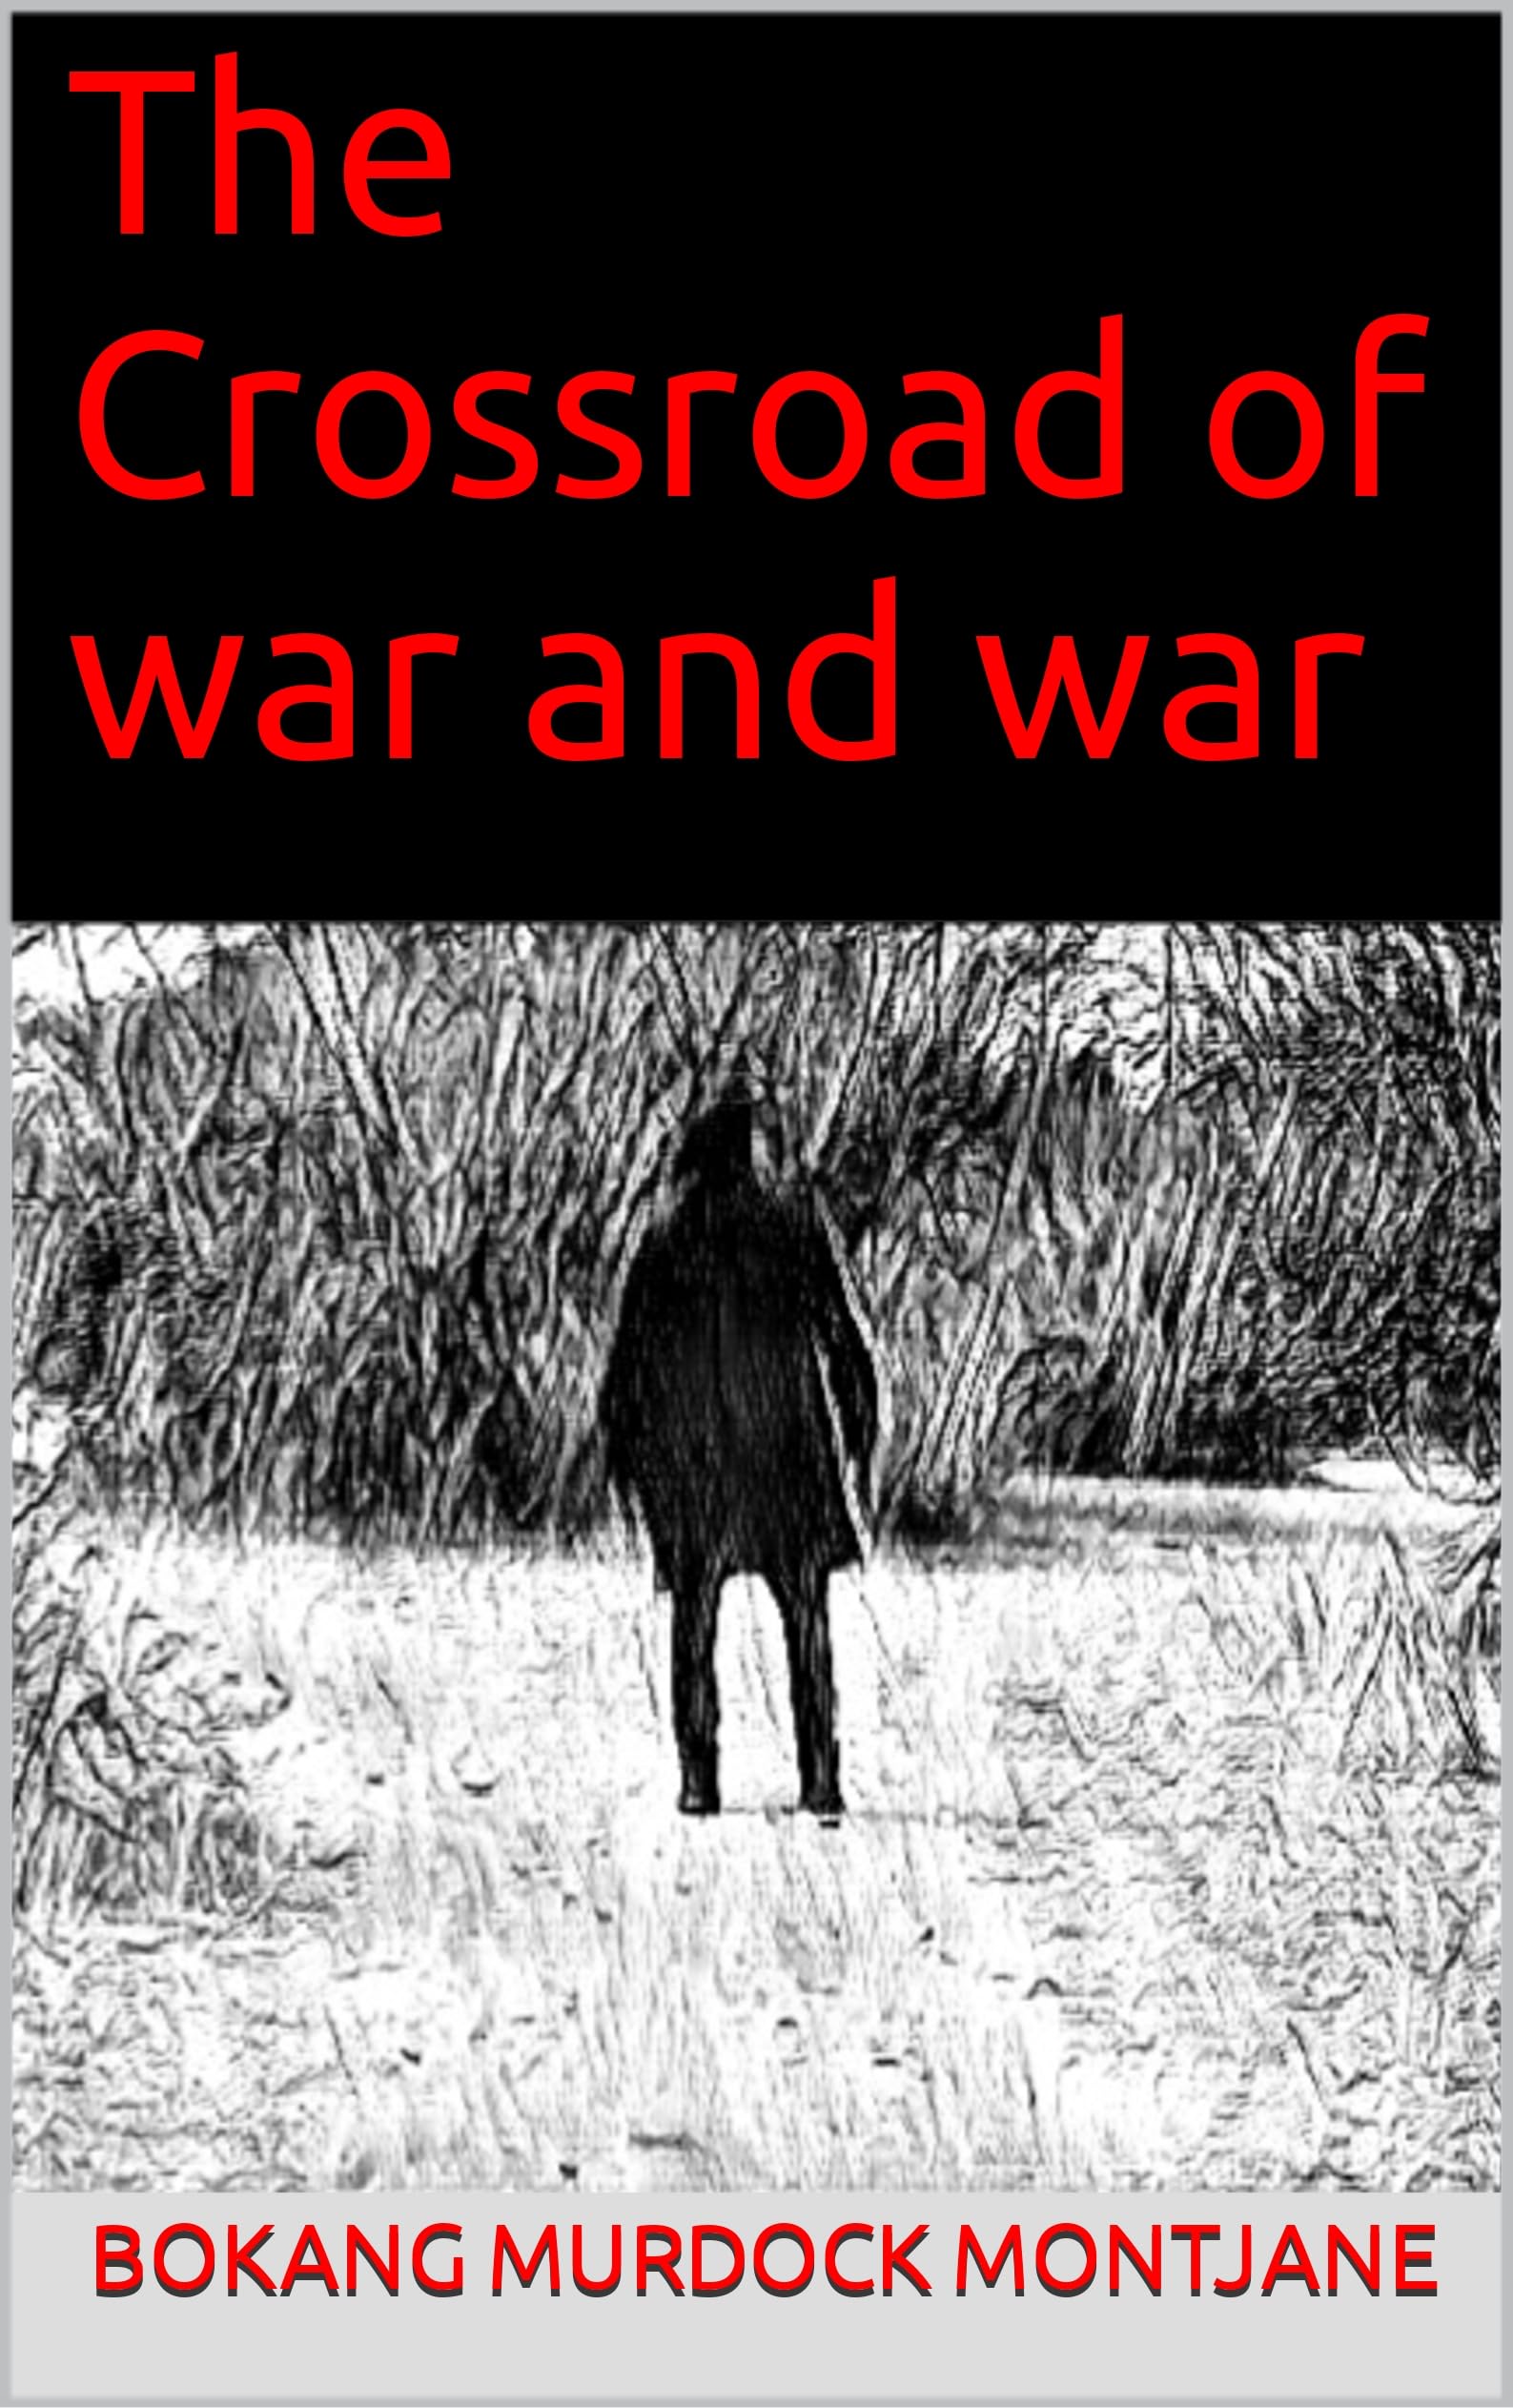 The Crossroad of War and War by Bokang Murdock Montjane